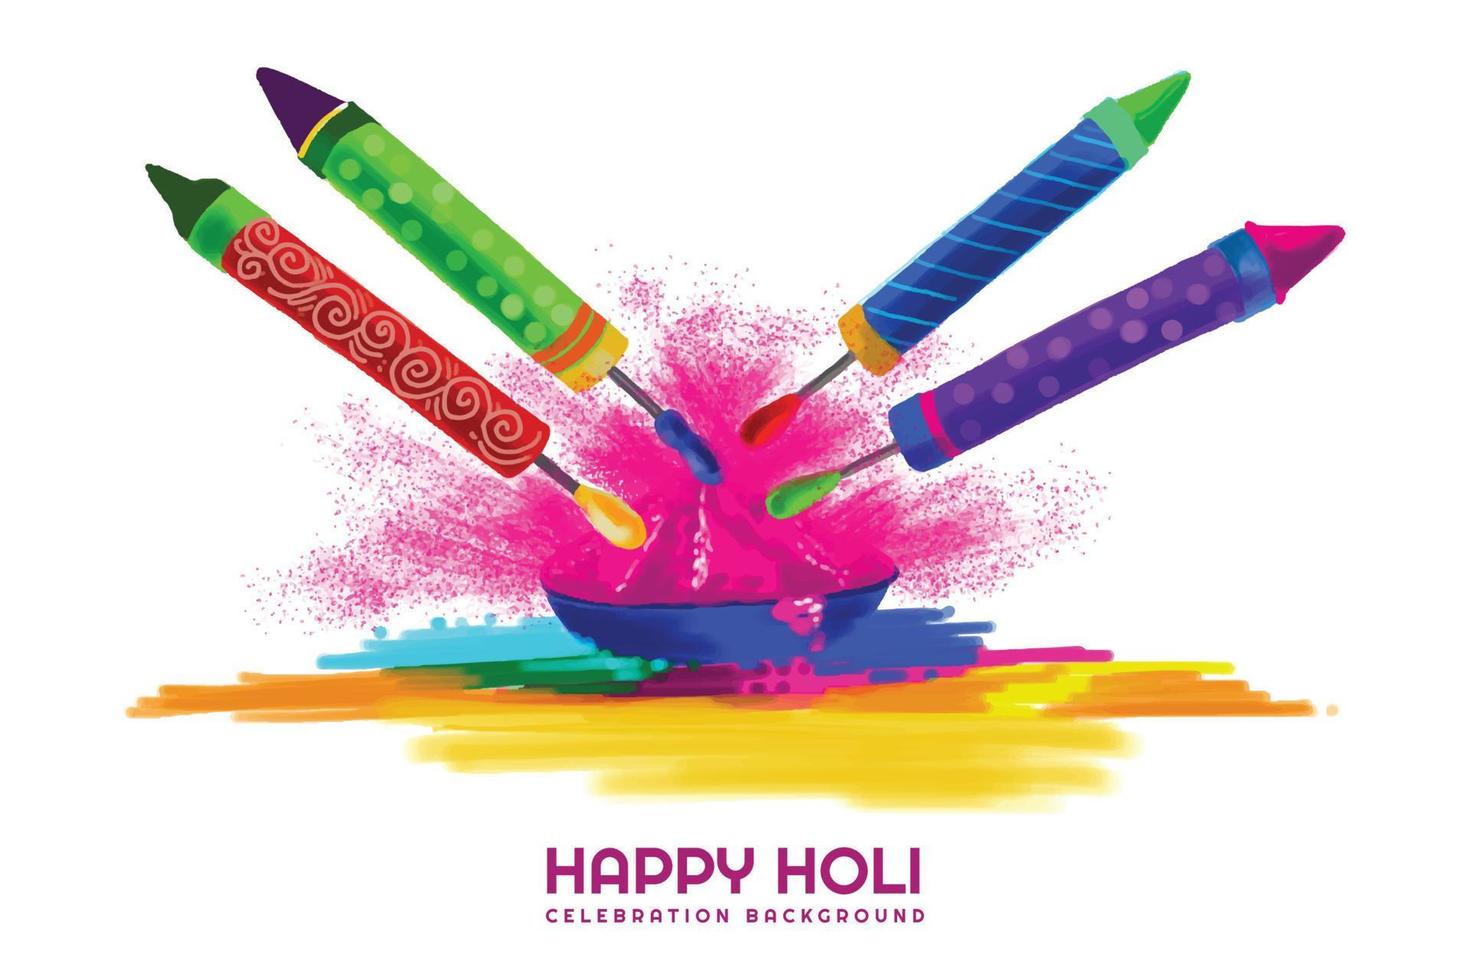 feliz holi festival de primavera india de colores tarjeta de felicitación vector